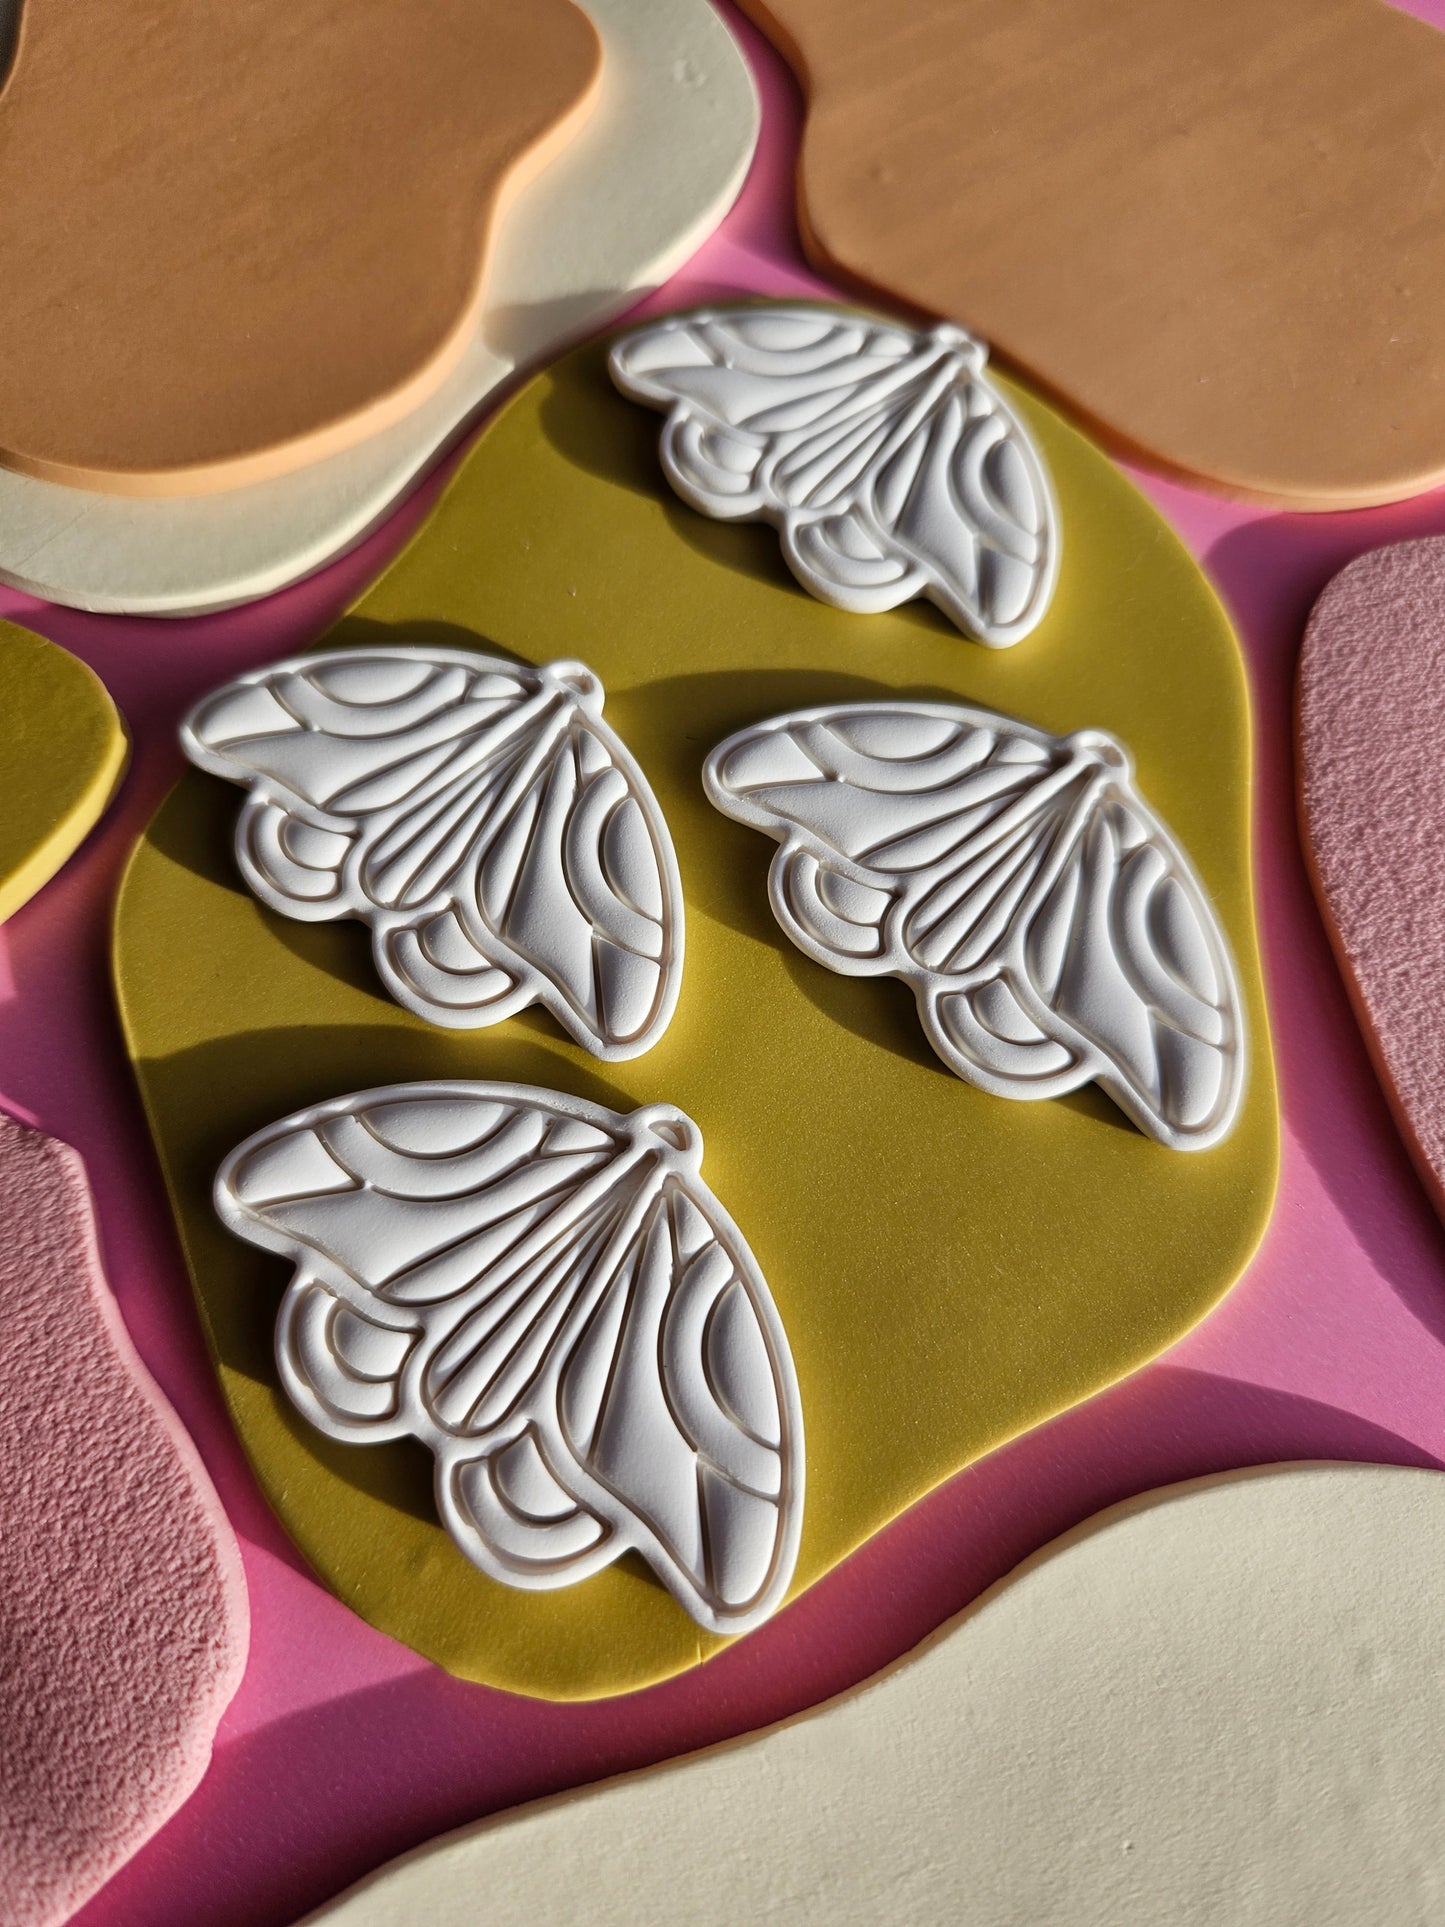 PRE ORDER "The Joyce" Emily Van Hoff Moth Inspired Polymer Clay Earrings in Moonlight White